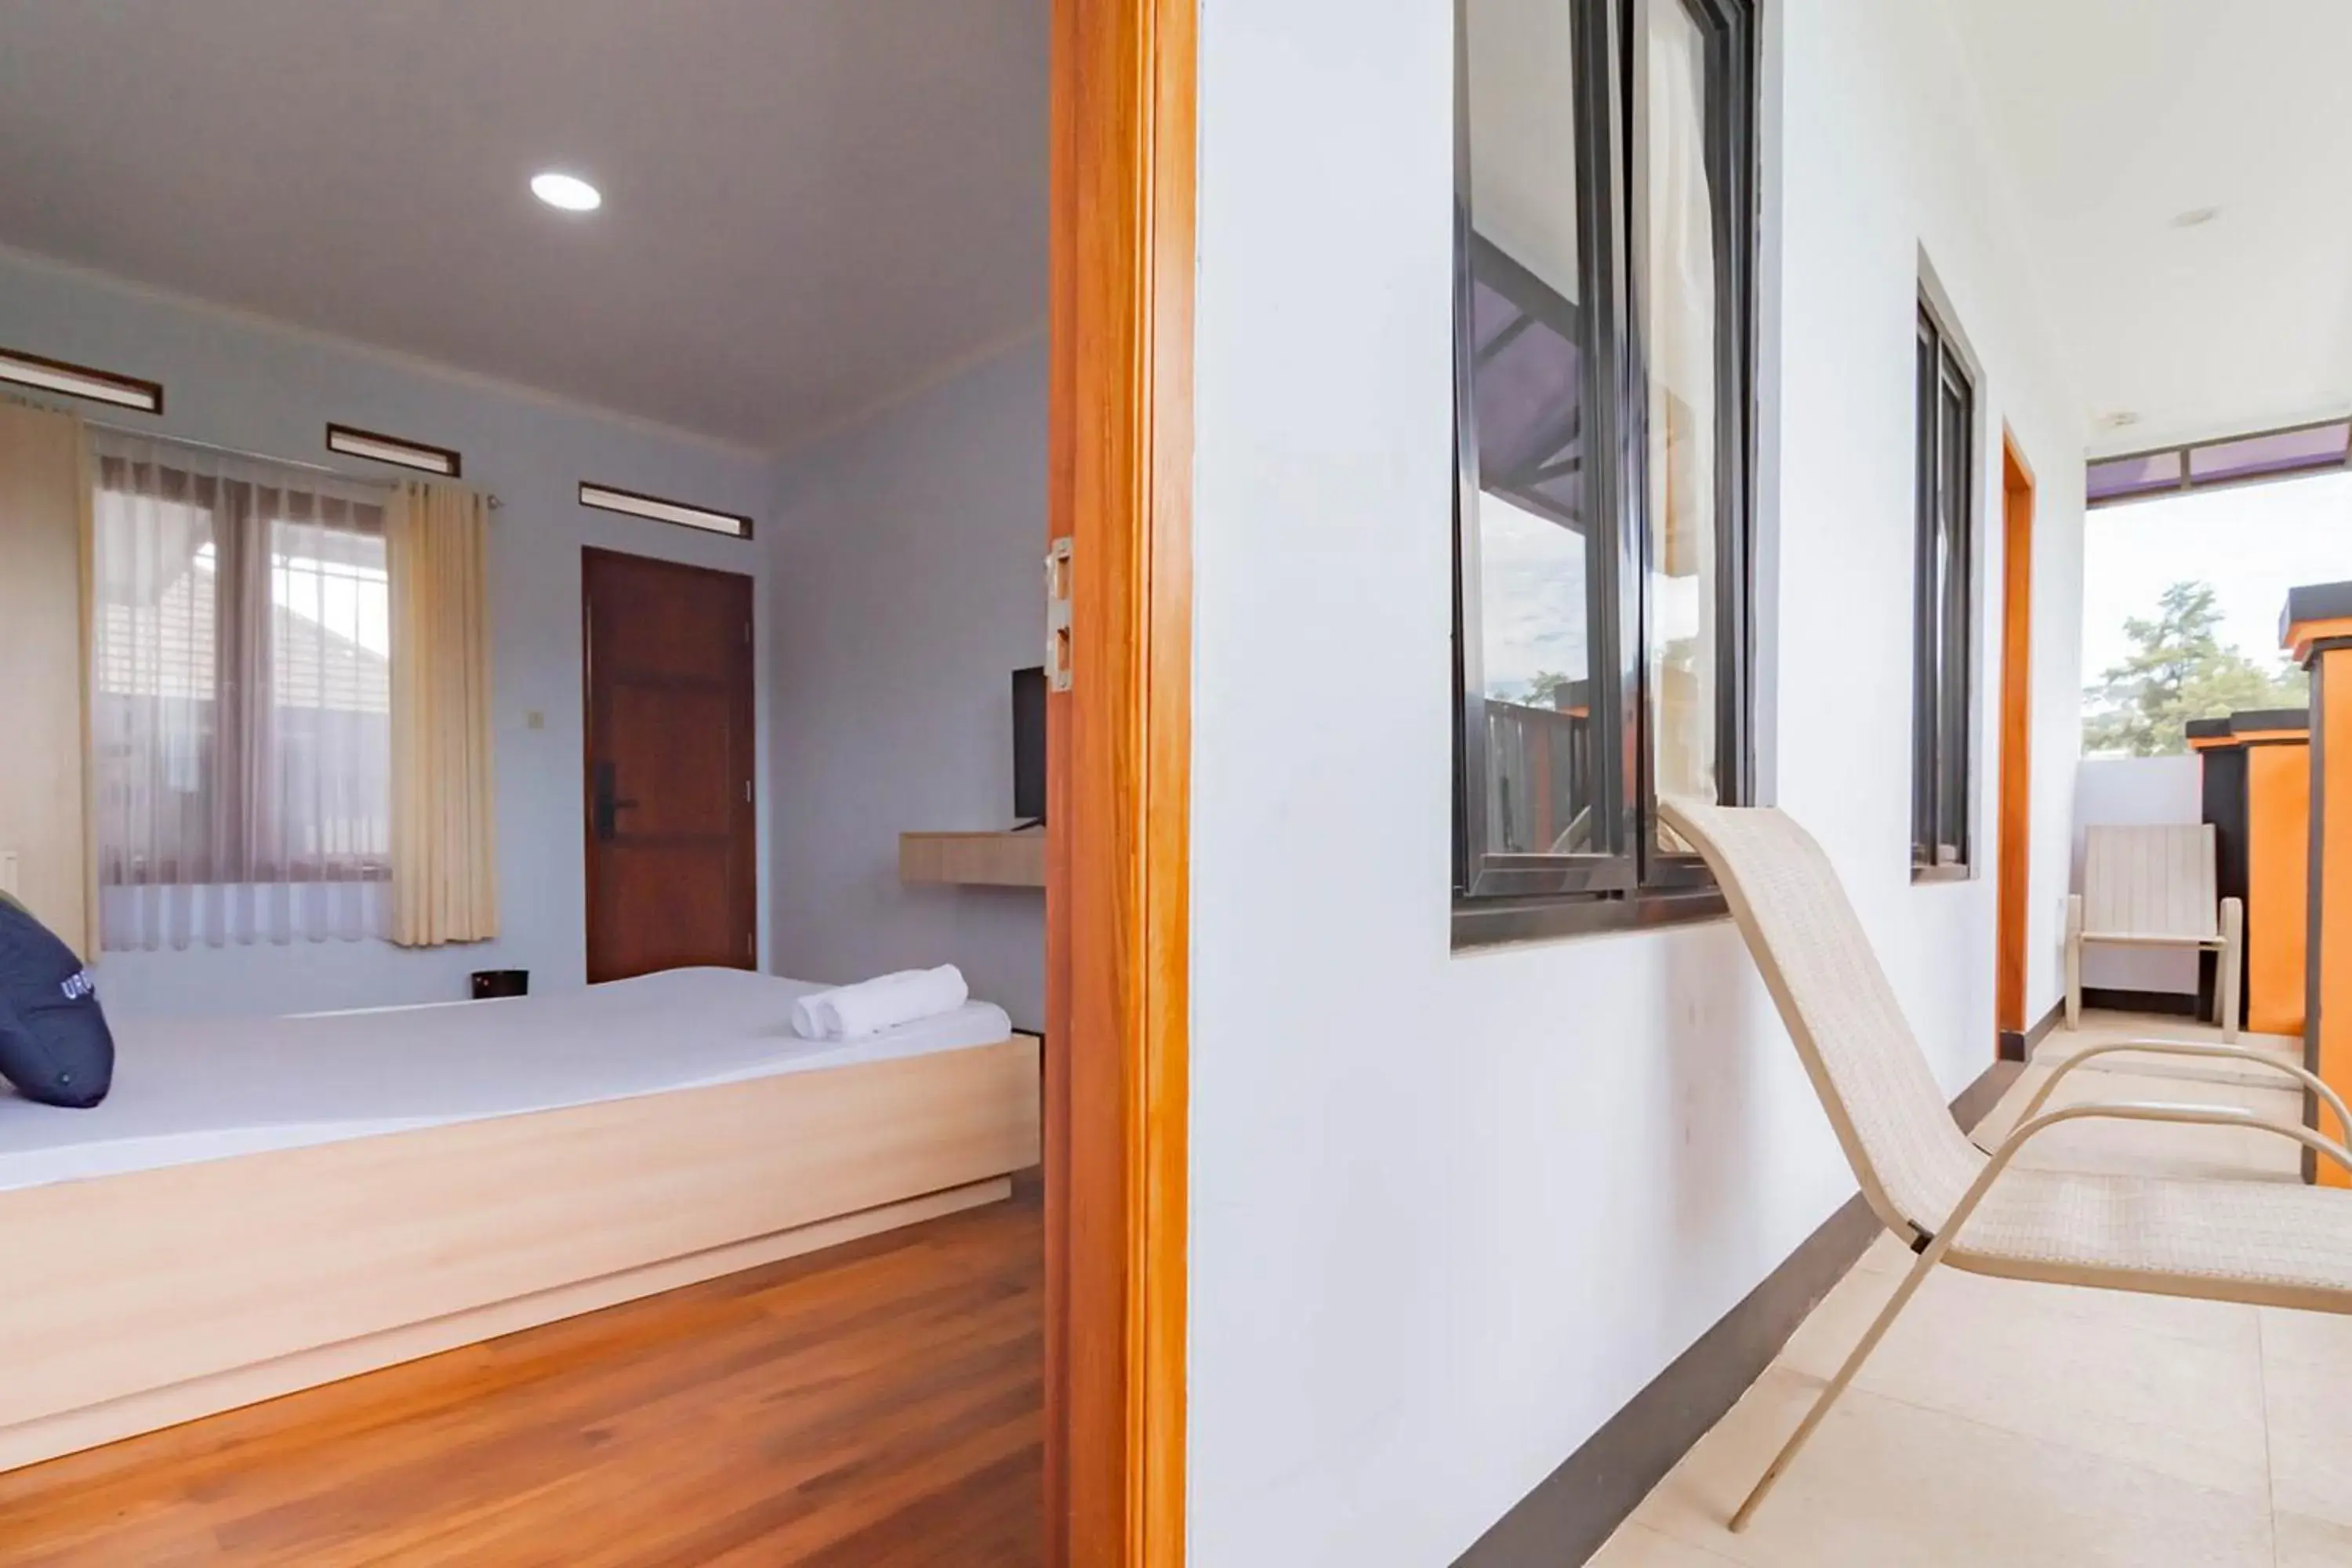 Bedroom, Bathroom in Urbanview Hotel Maribaya Lembang Bandung